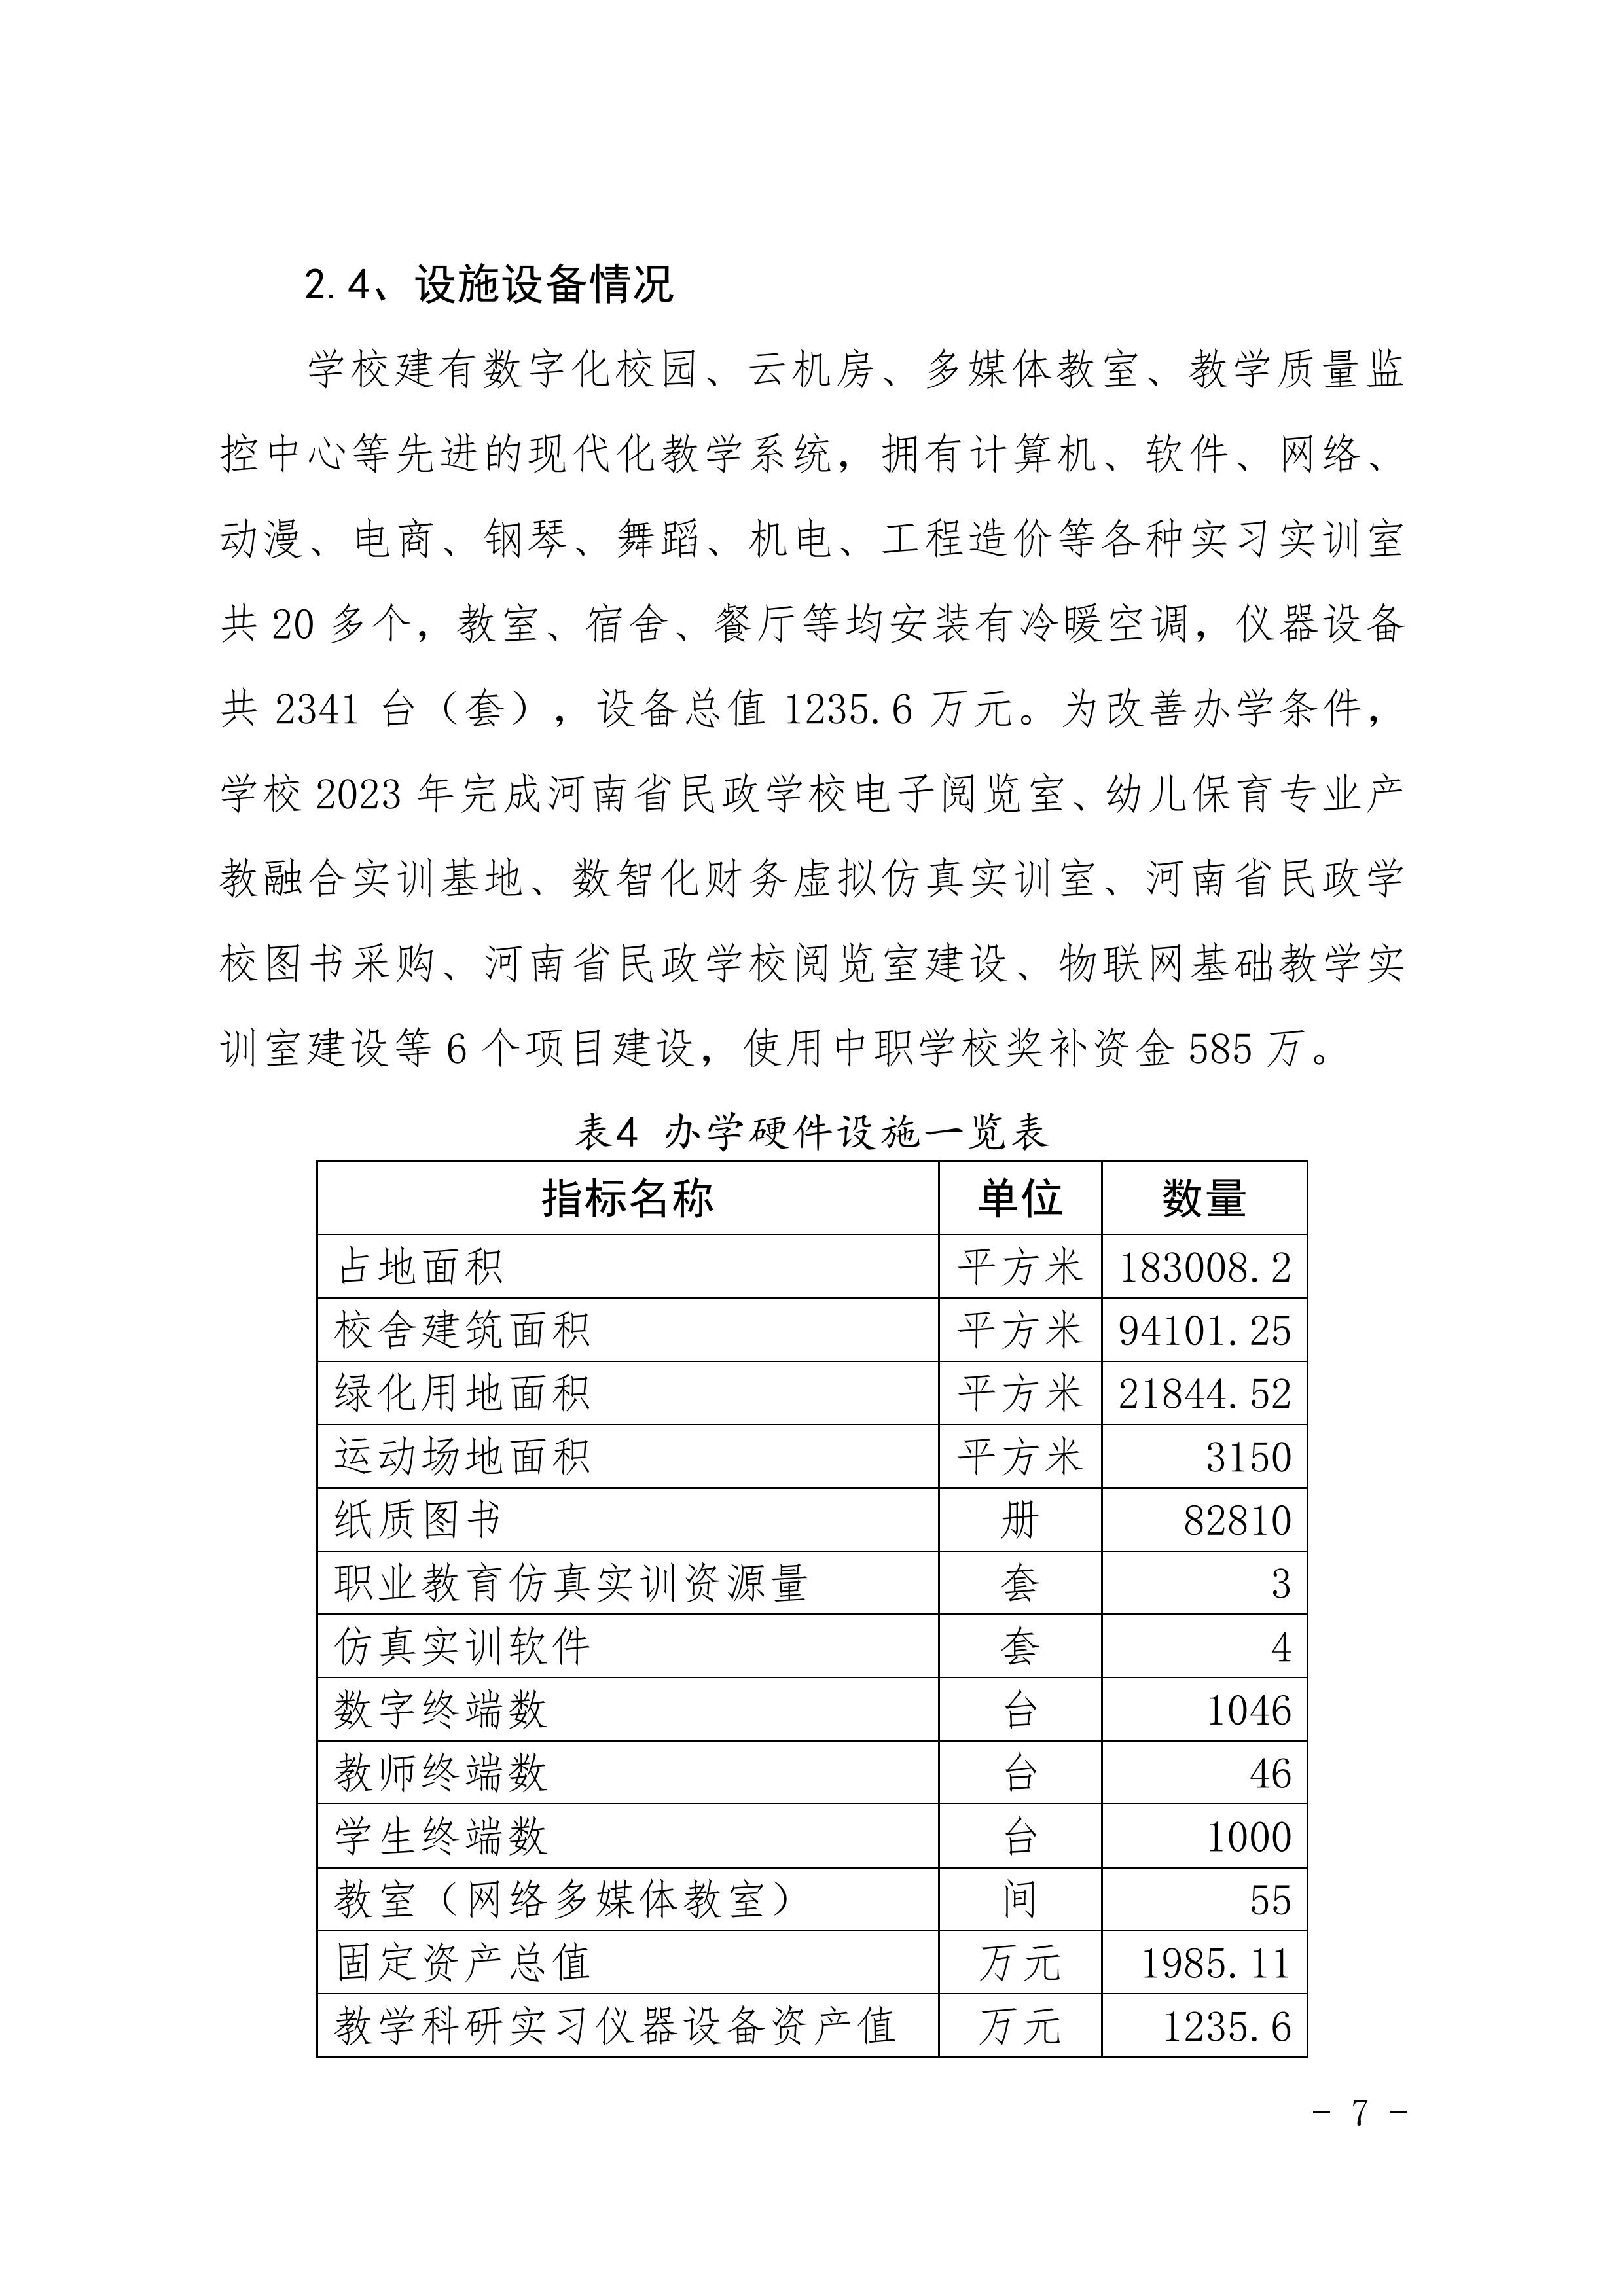 河南省民政学校职业教育质量报告（2023年度）发布版_10.jpg